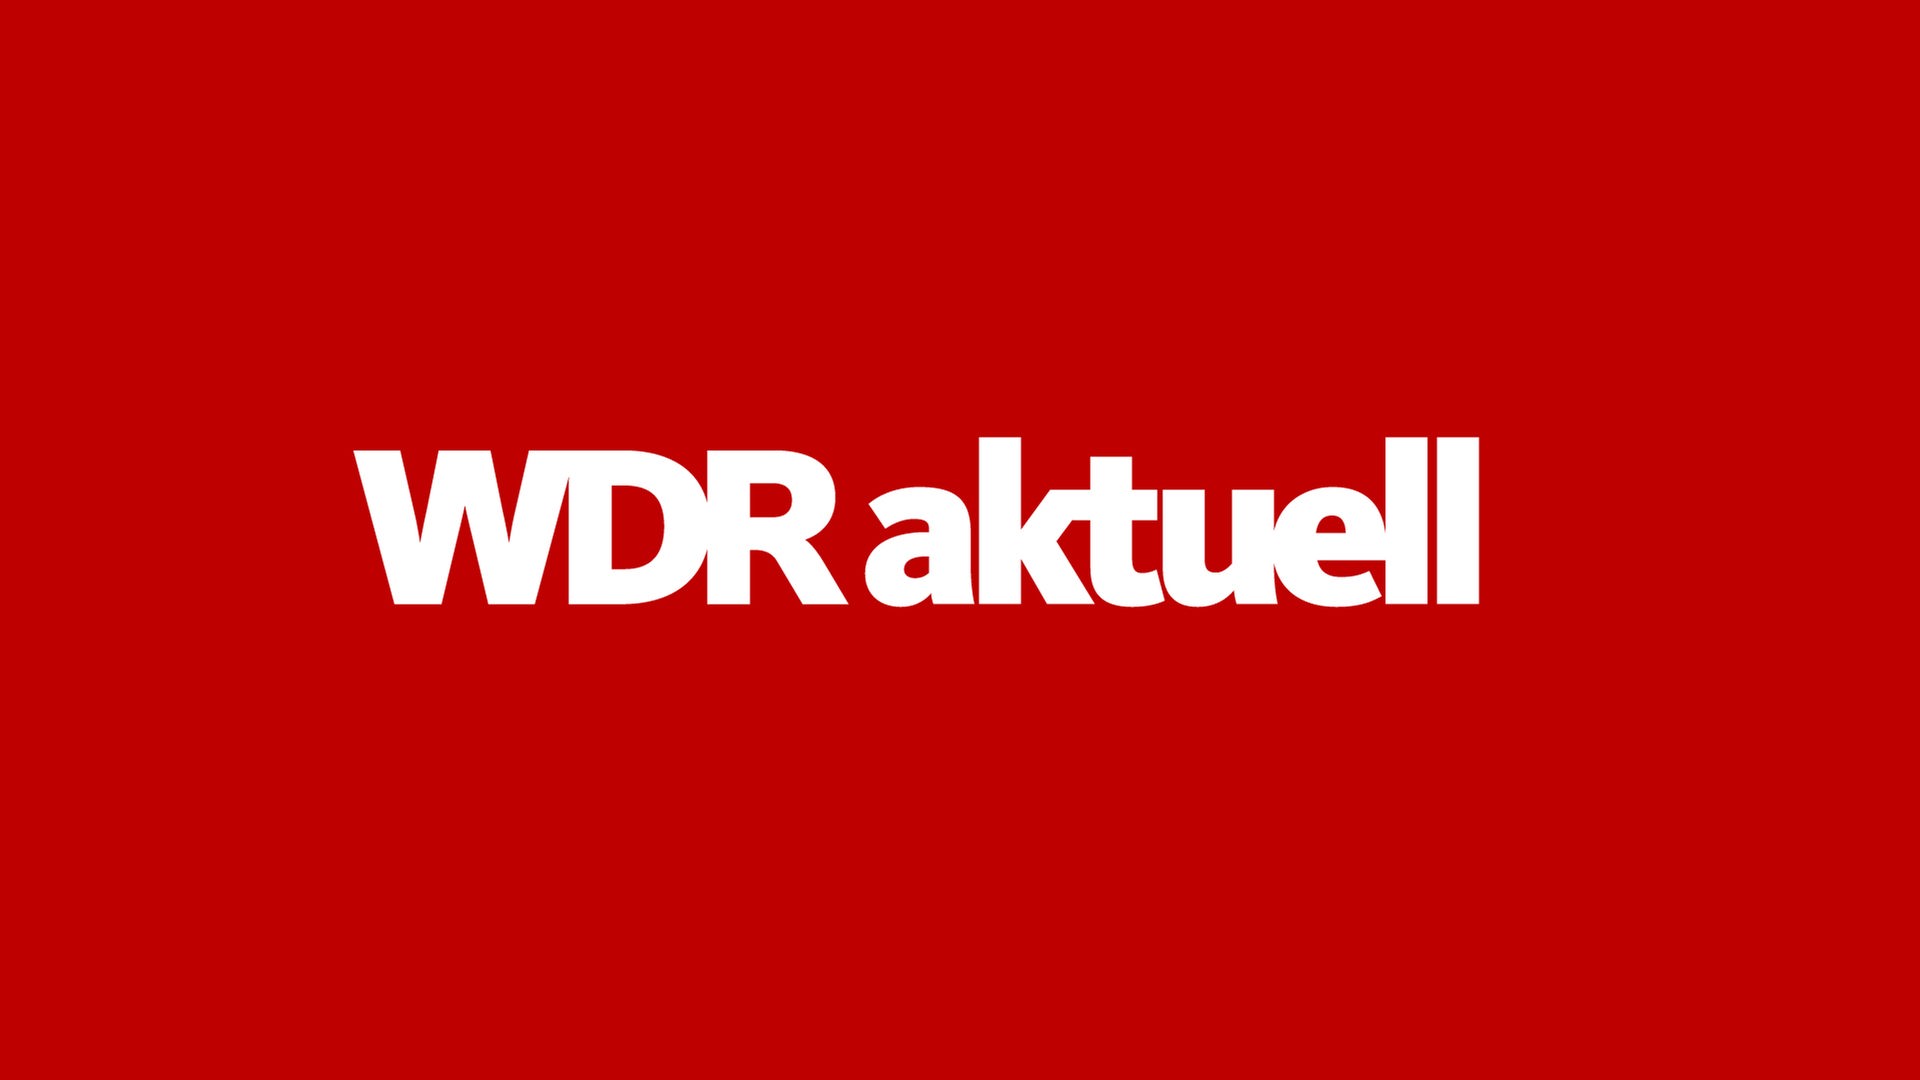 Mord an 15-Jährigen in Köln-Mülheim - WDR aktuell - Sendungen A-Z - Video - Mediathek